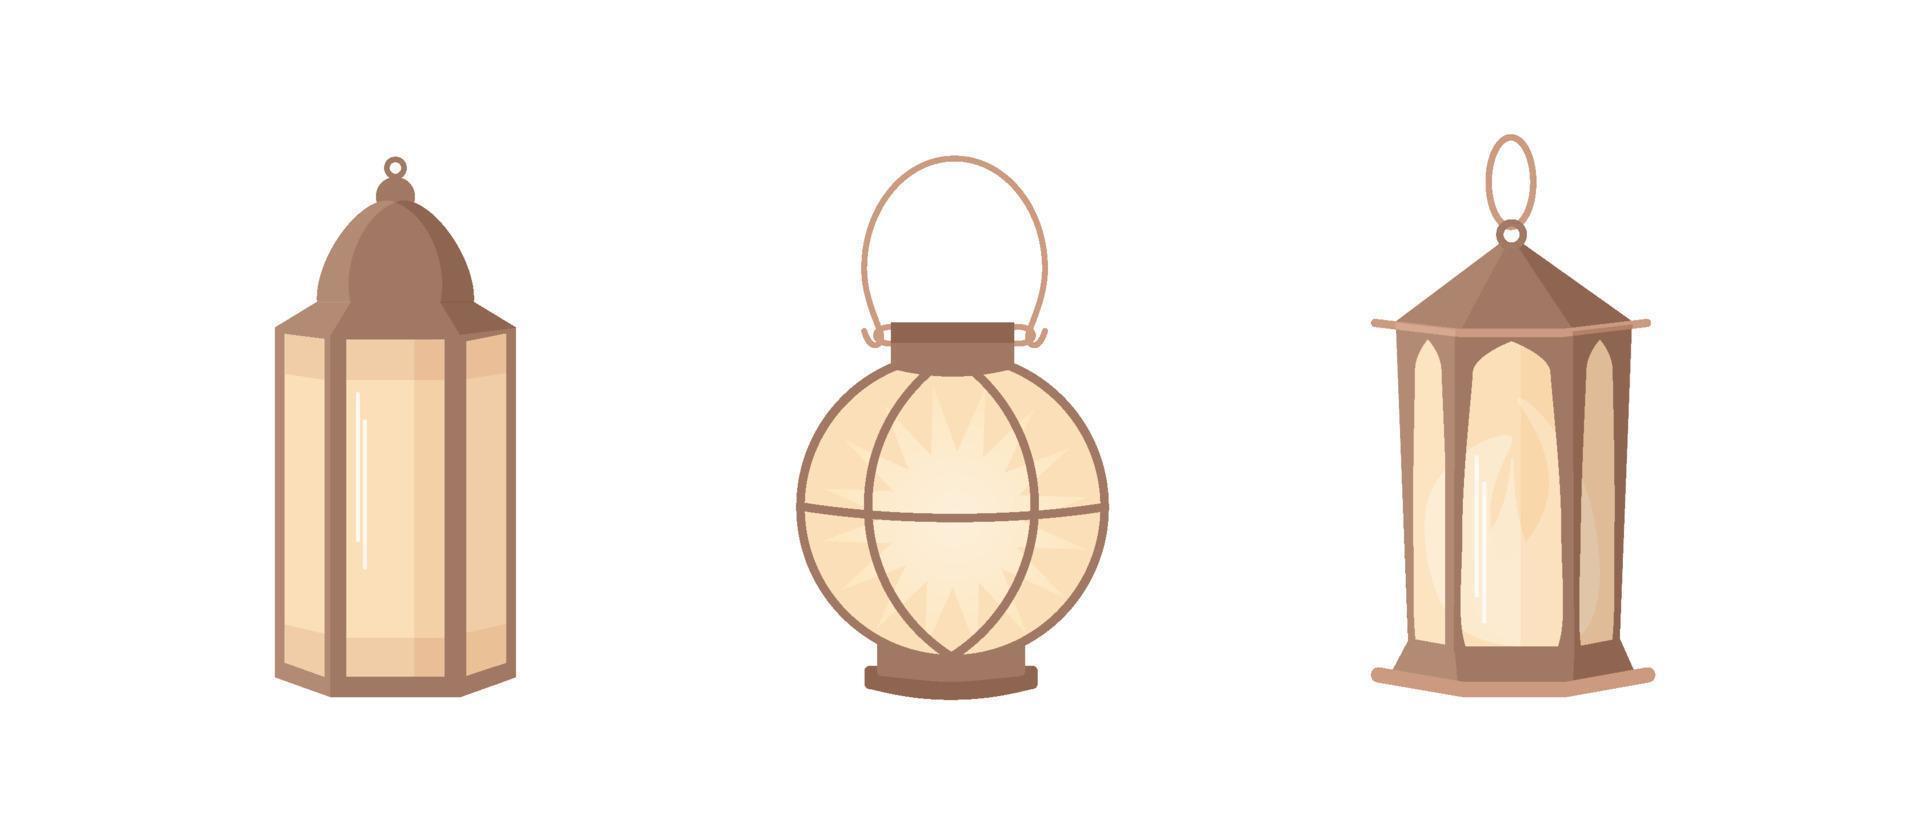 lanterne de ramadan kareem dans un style islamique. lampe de vecteur